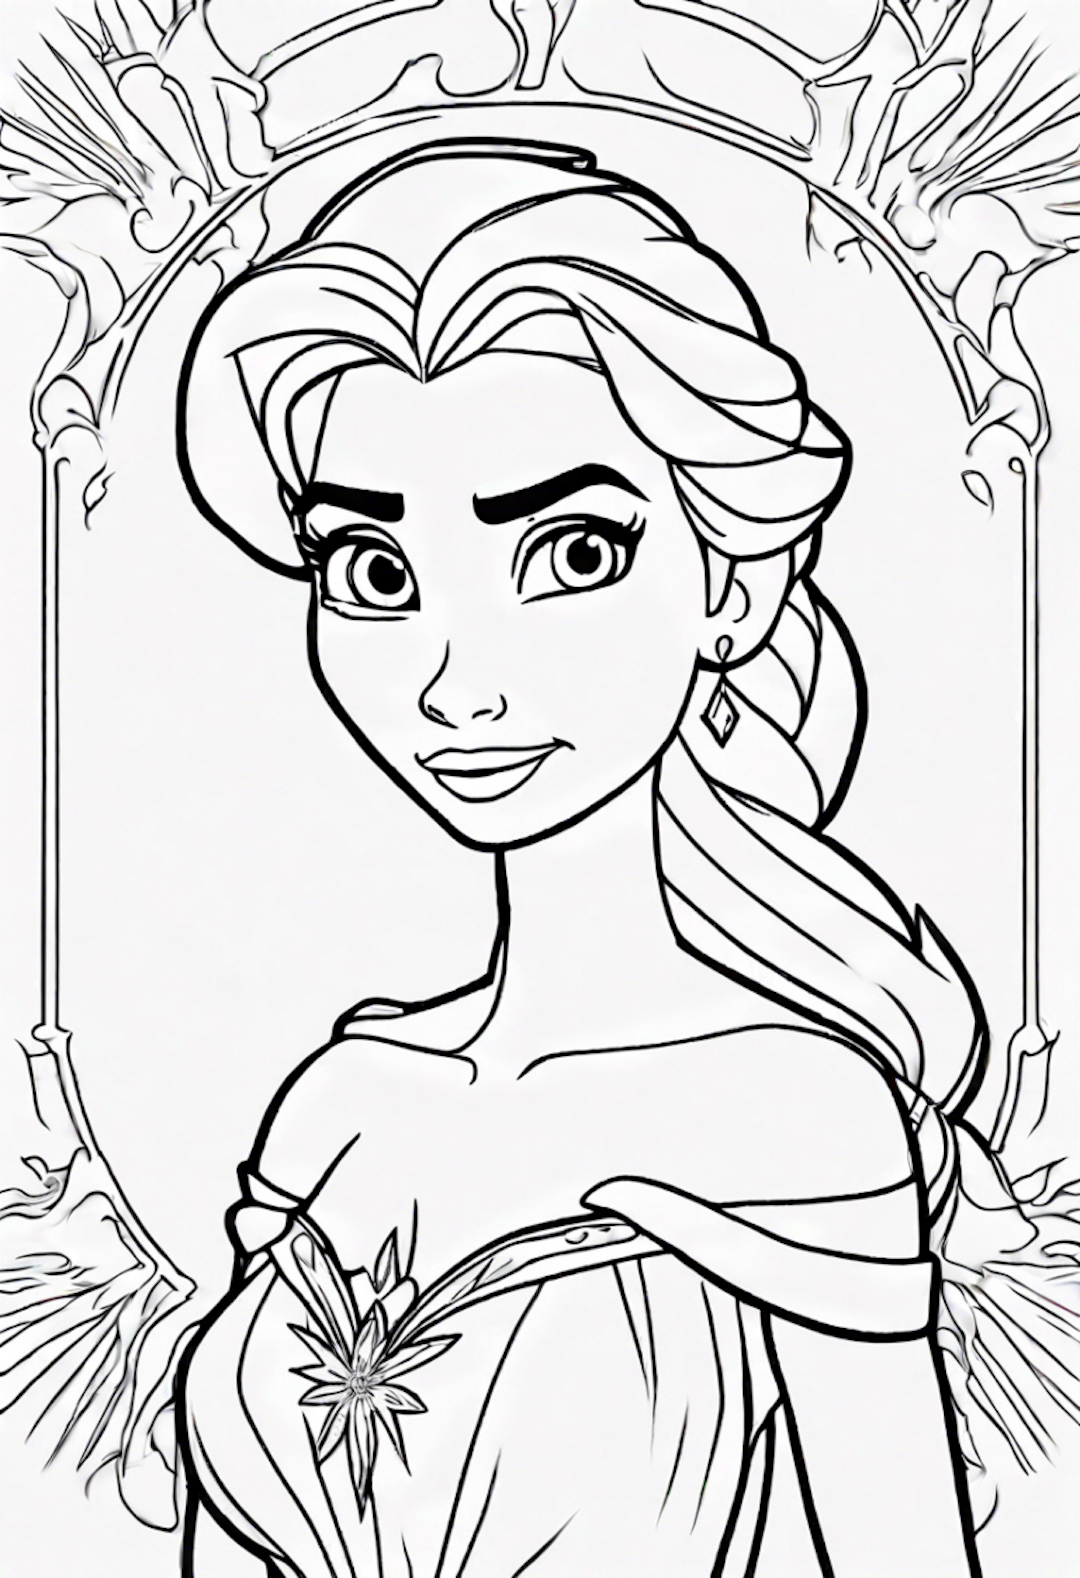 Elsa’s Elegant Portrait Coloring Page coloring pages